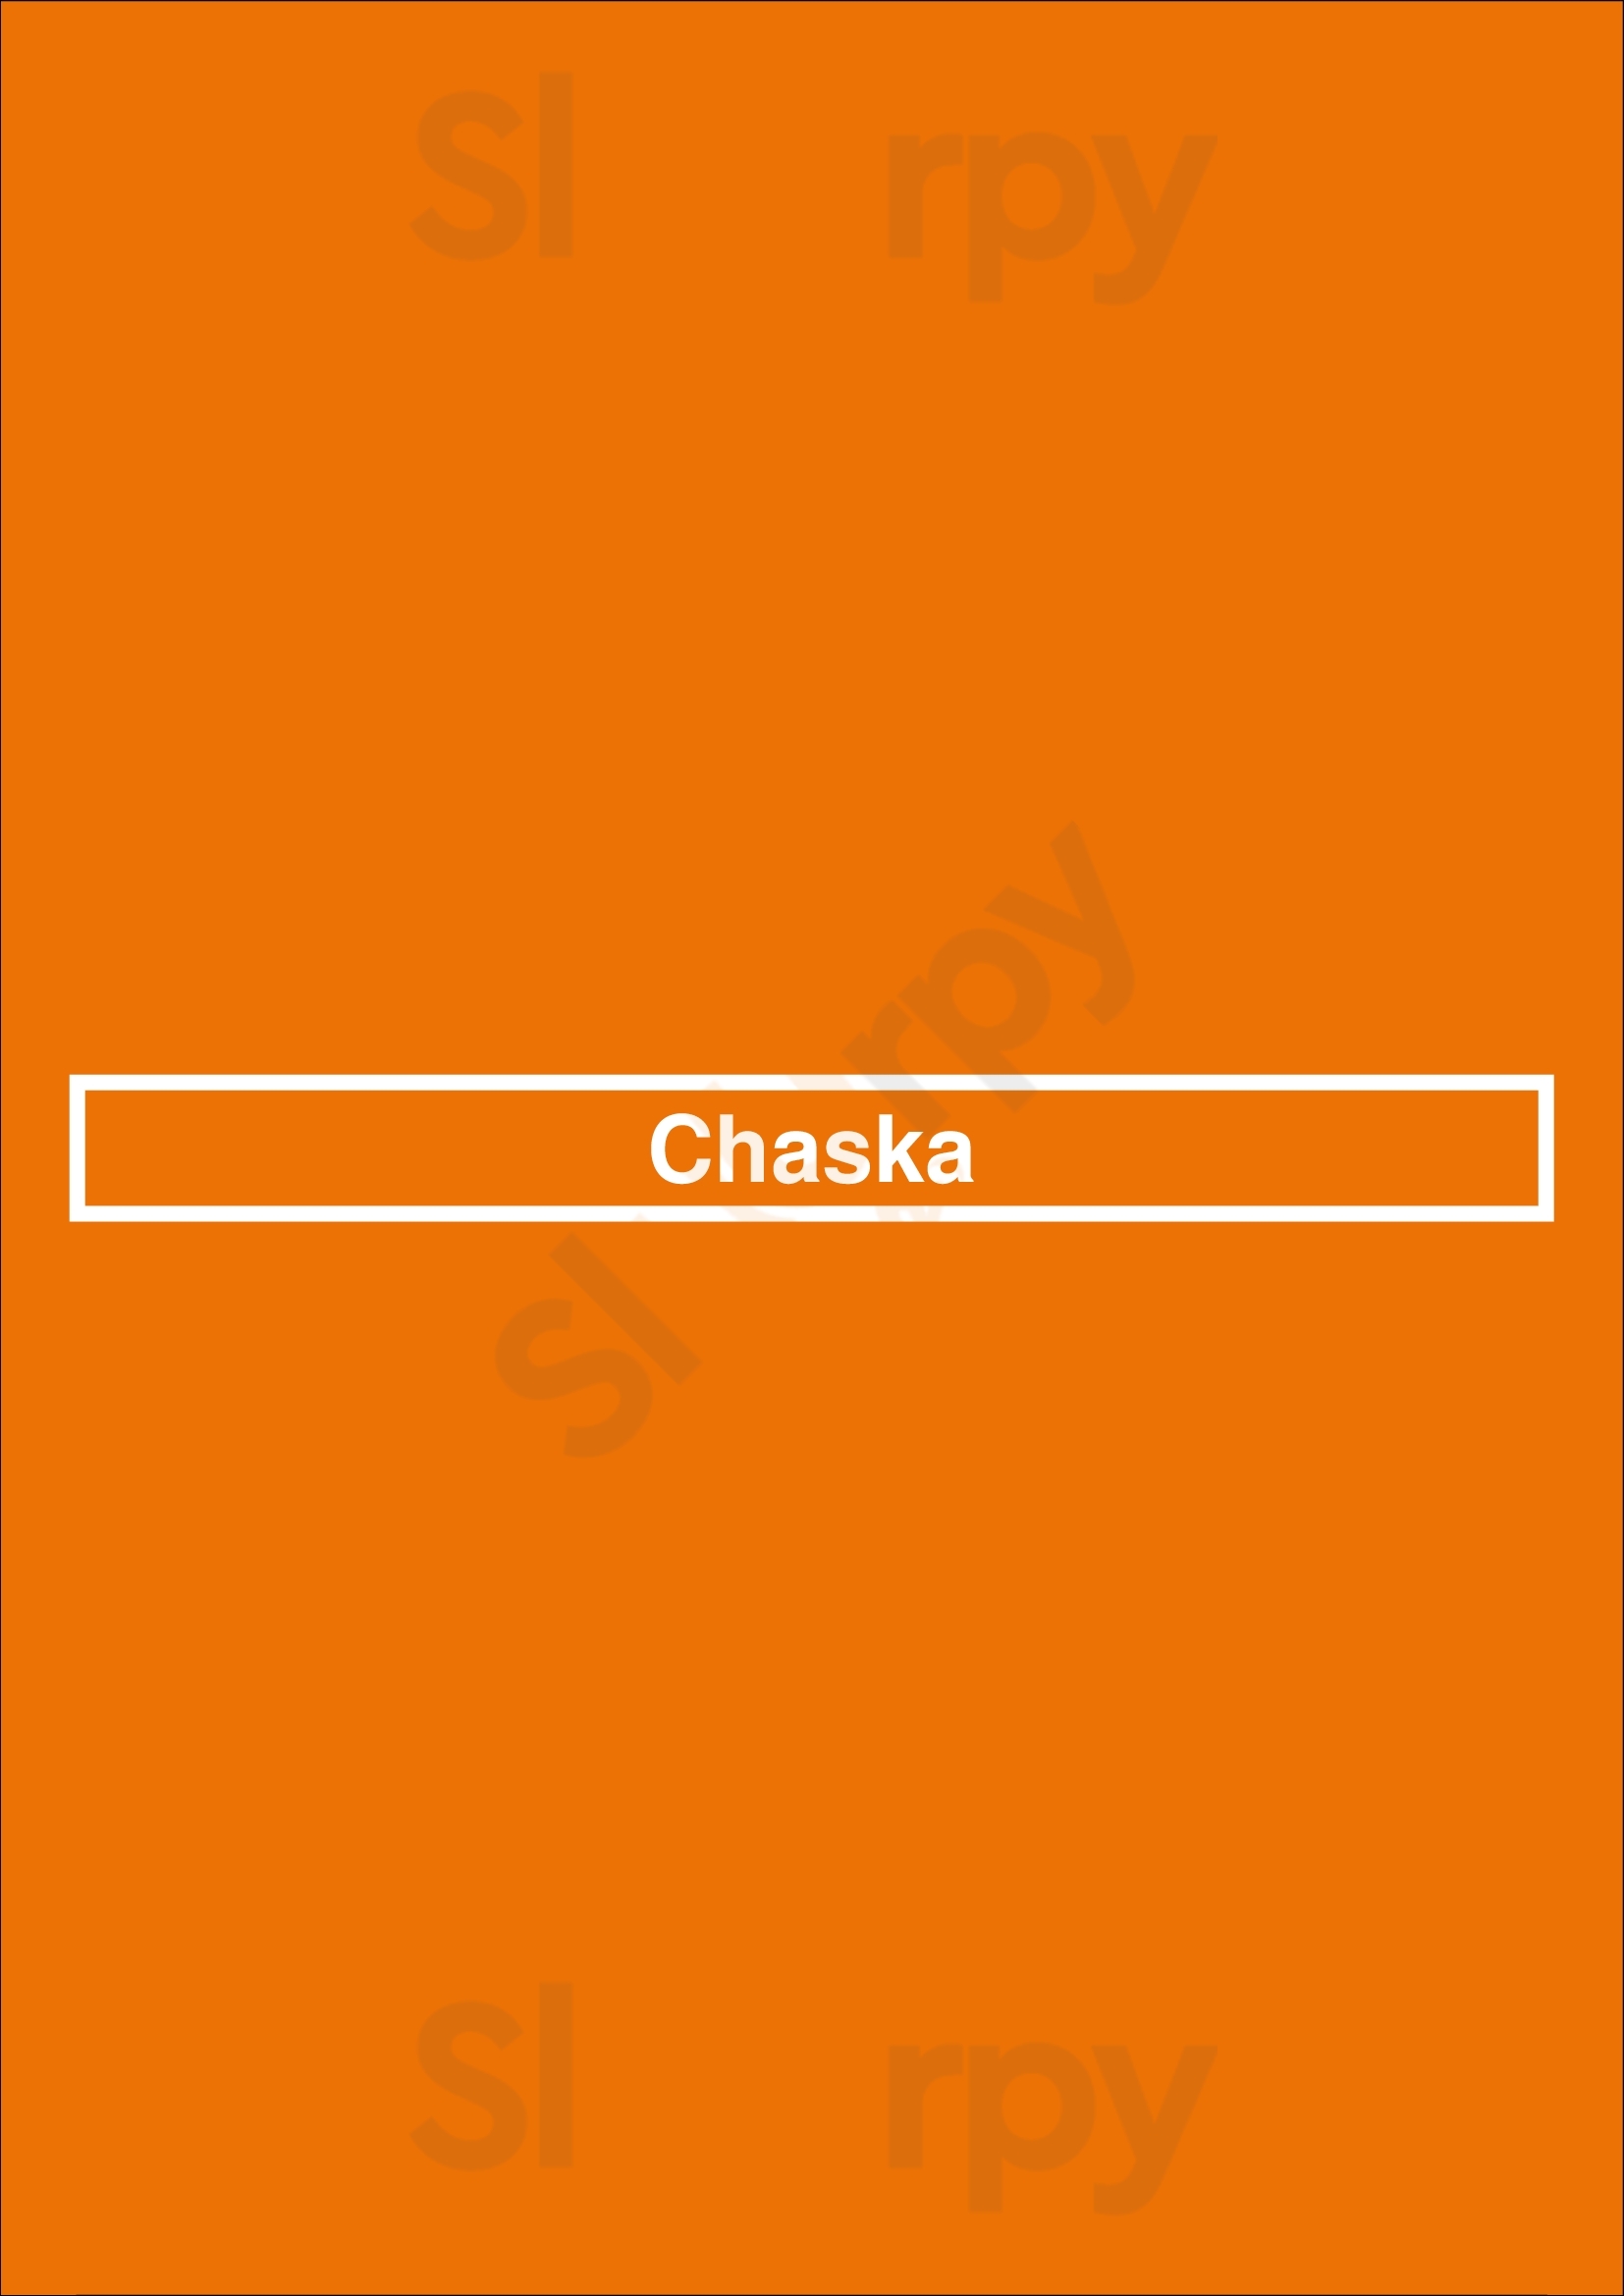 Chaska Mississauga Menu - 1